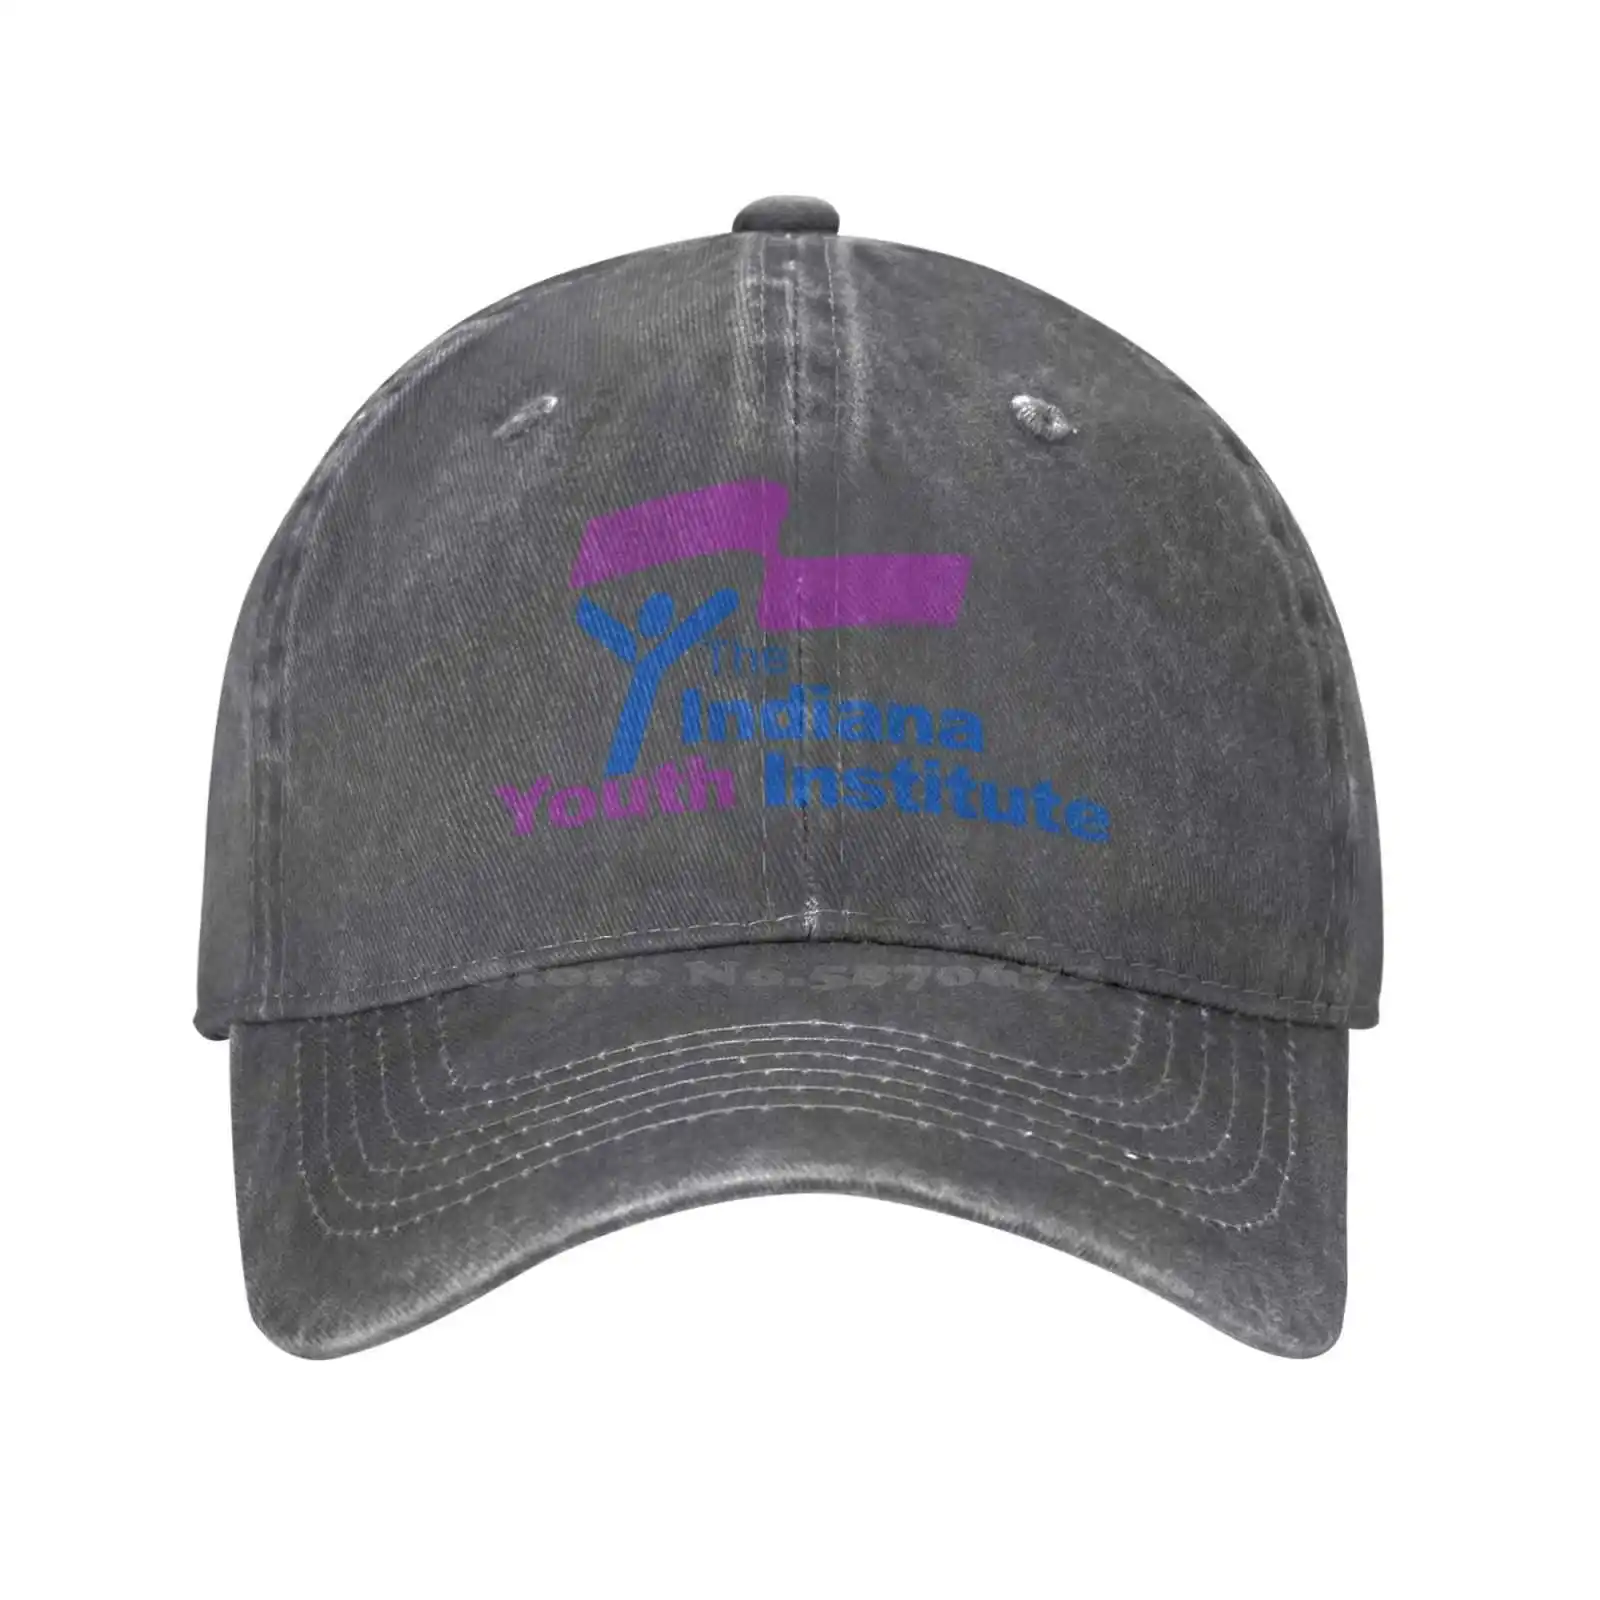 

Повседневная джинсовая бейсбольная кепка с графическим логотипом Индиана молодежного института